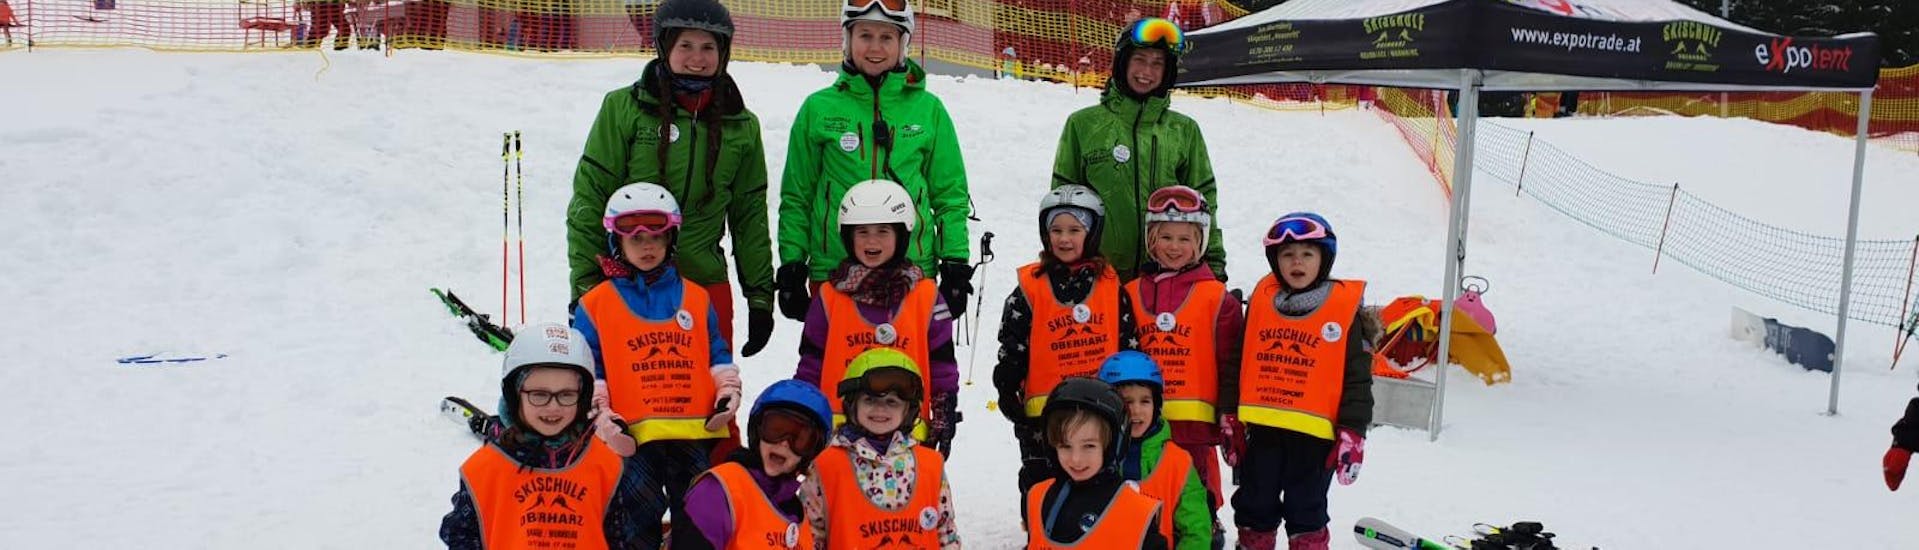 Clases de esquí para niños a partir de 9 años con experiencia.